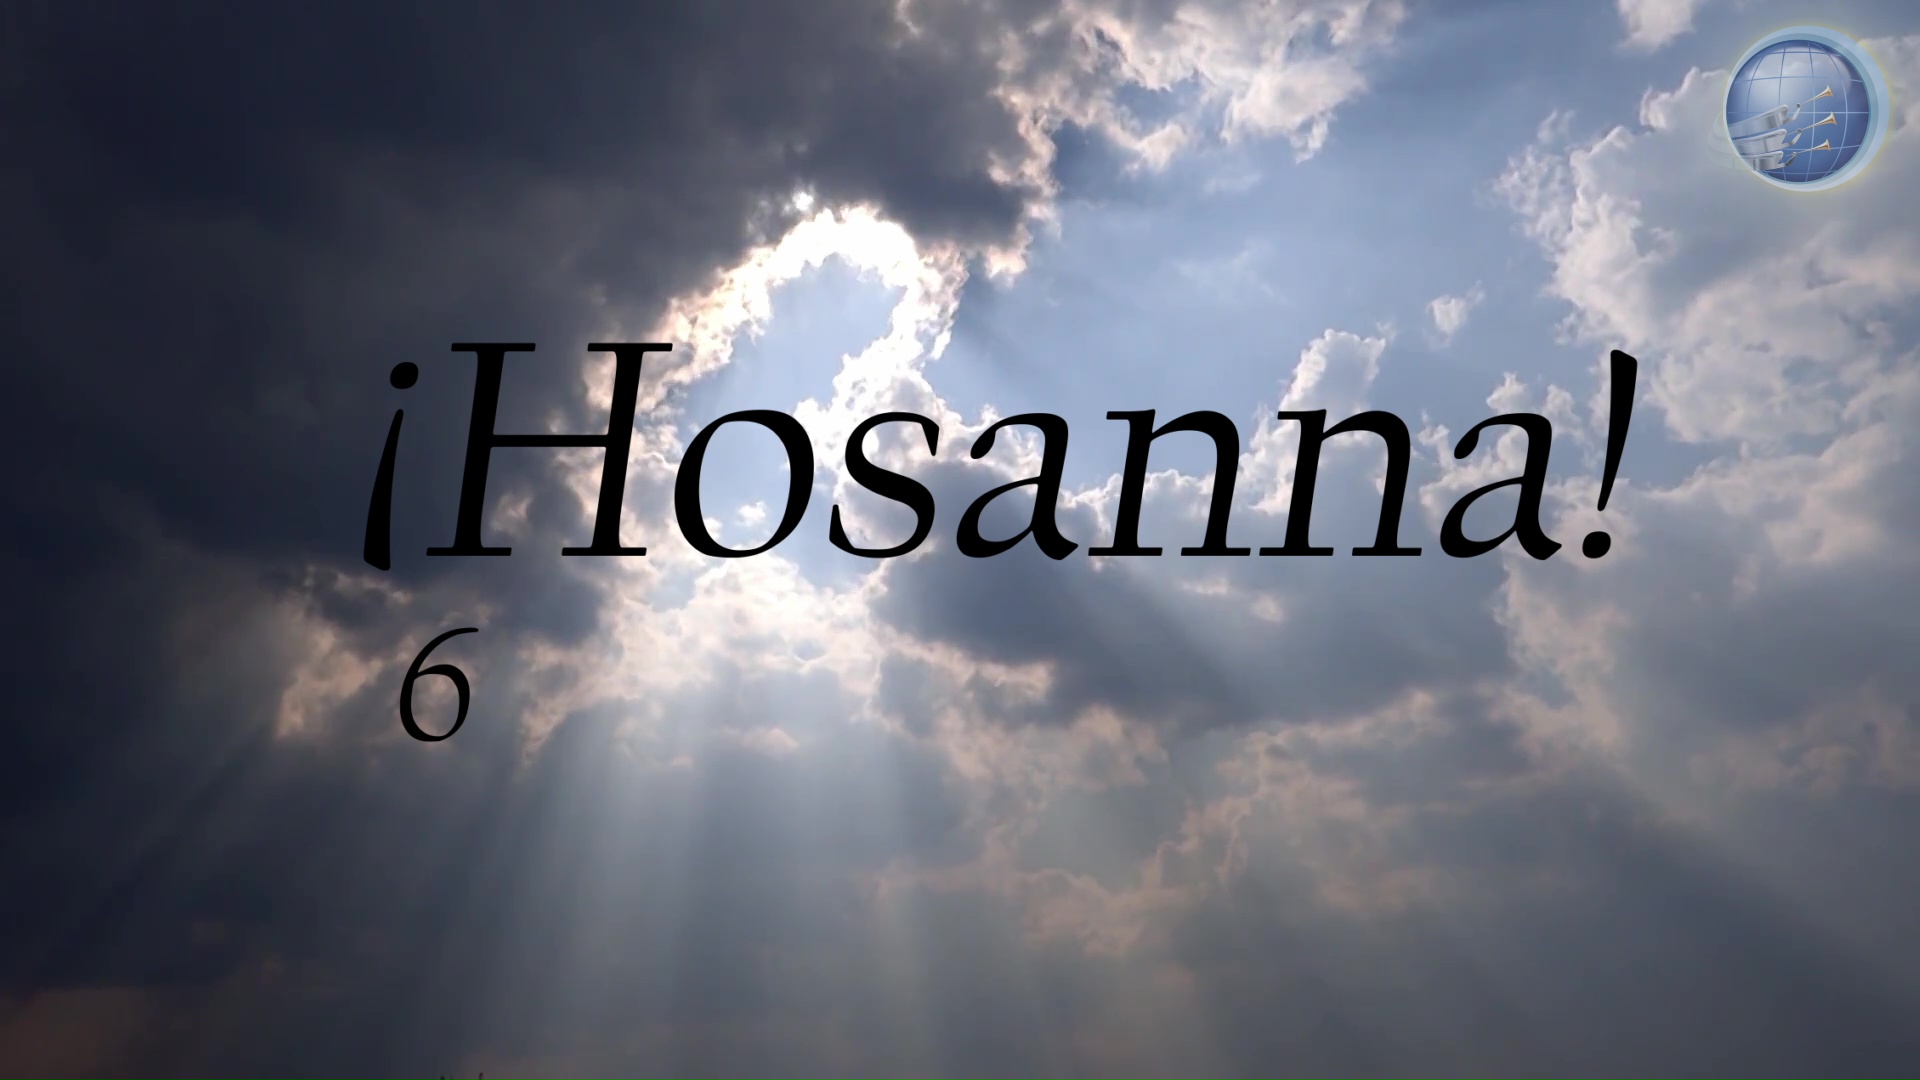 006 - Hosanna!.jpg